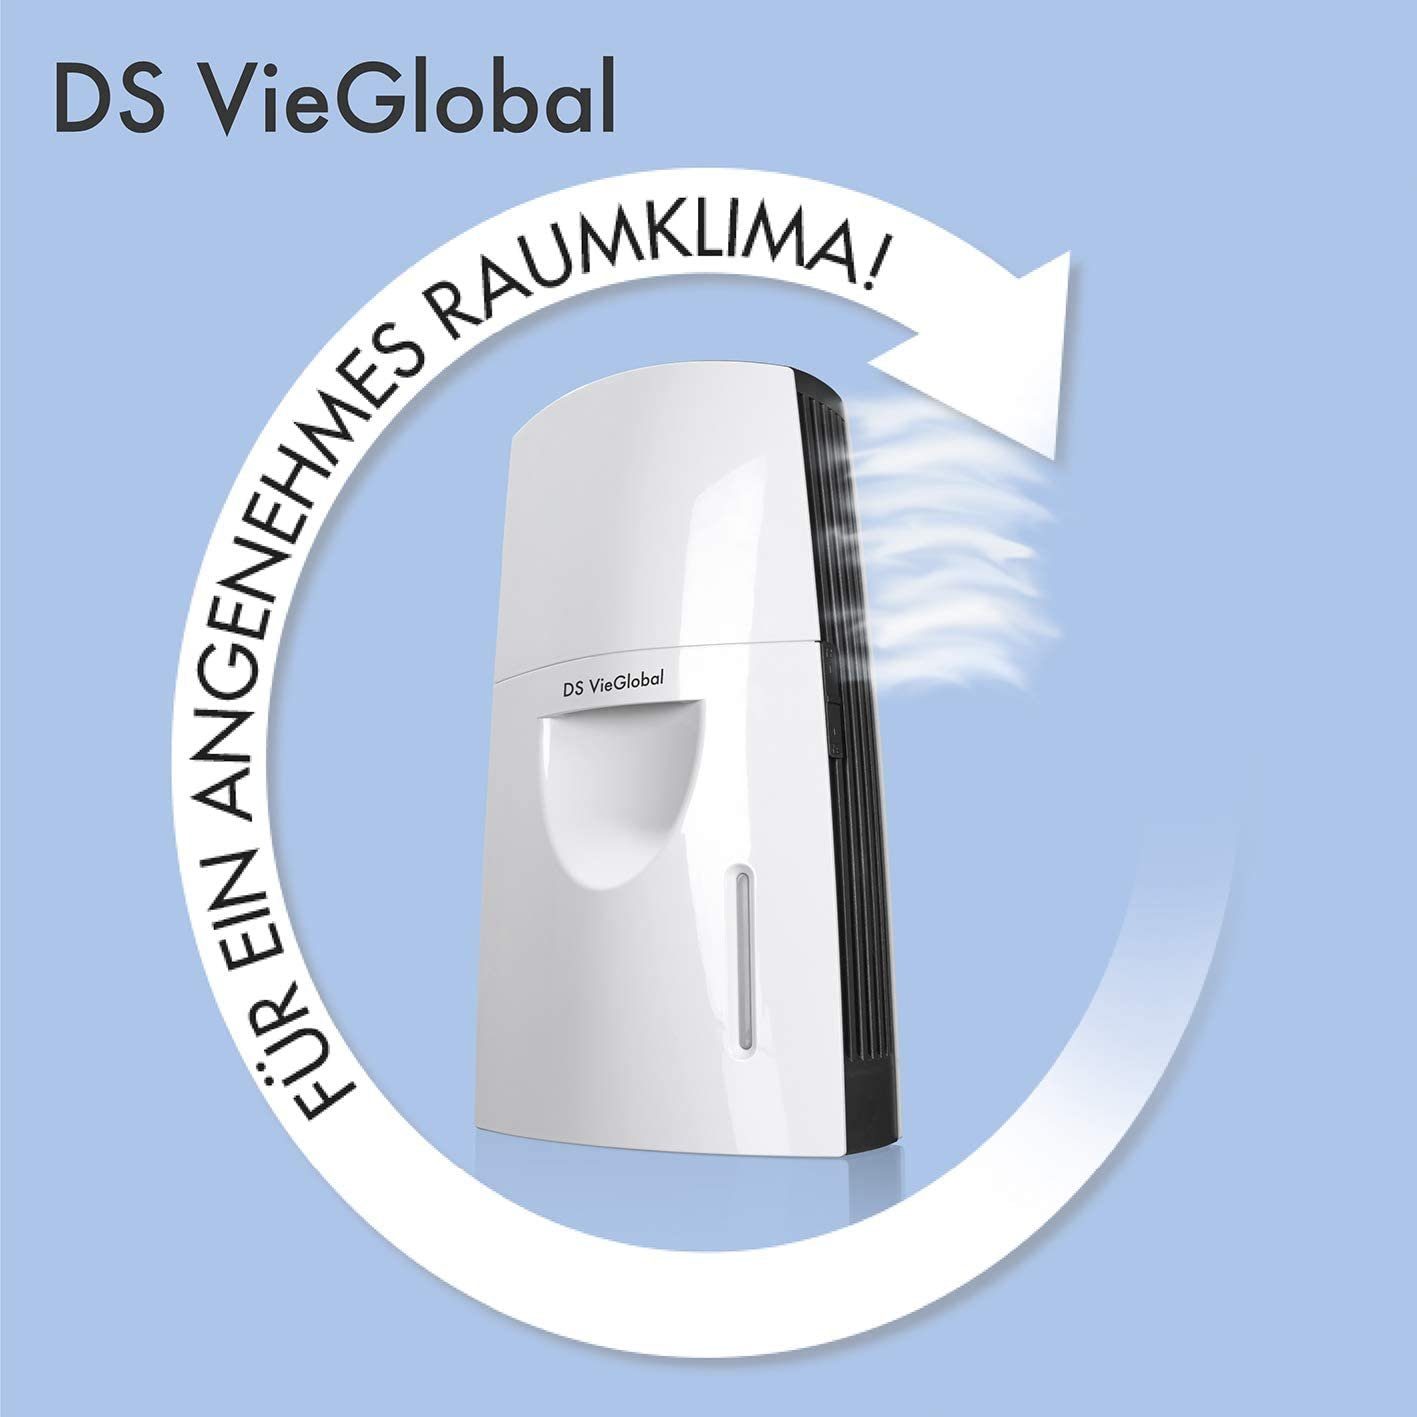 DS VieGlobal Luftbefeuchter Thermalsole-Verdunster, 2,5 l Wassertank, Diffuser mit Timer-Funktion in weiß/grau, 2,5Watt